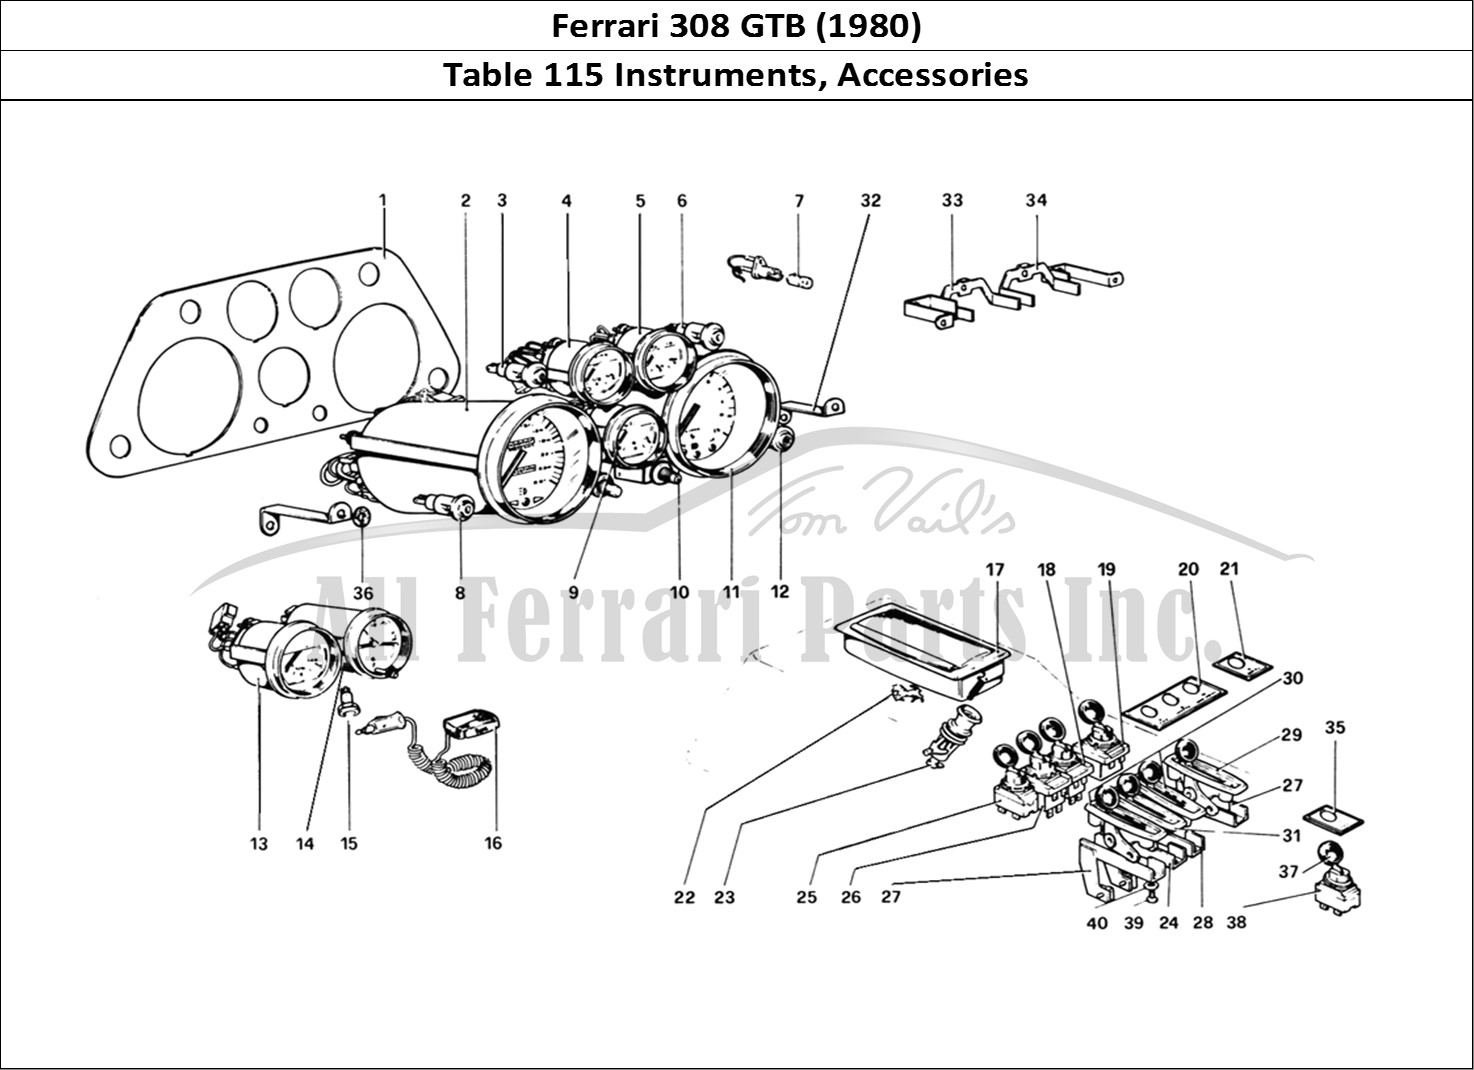 Ferrari Parts Ferrari 308 GTB (1980) Page 115 Instruments and Accessori